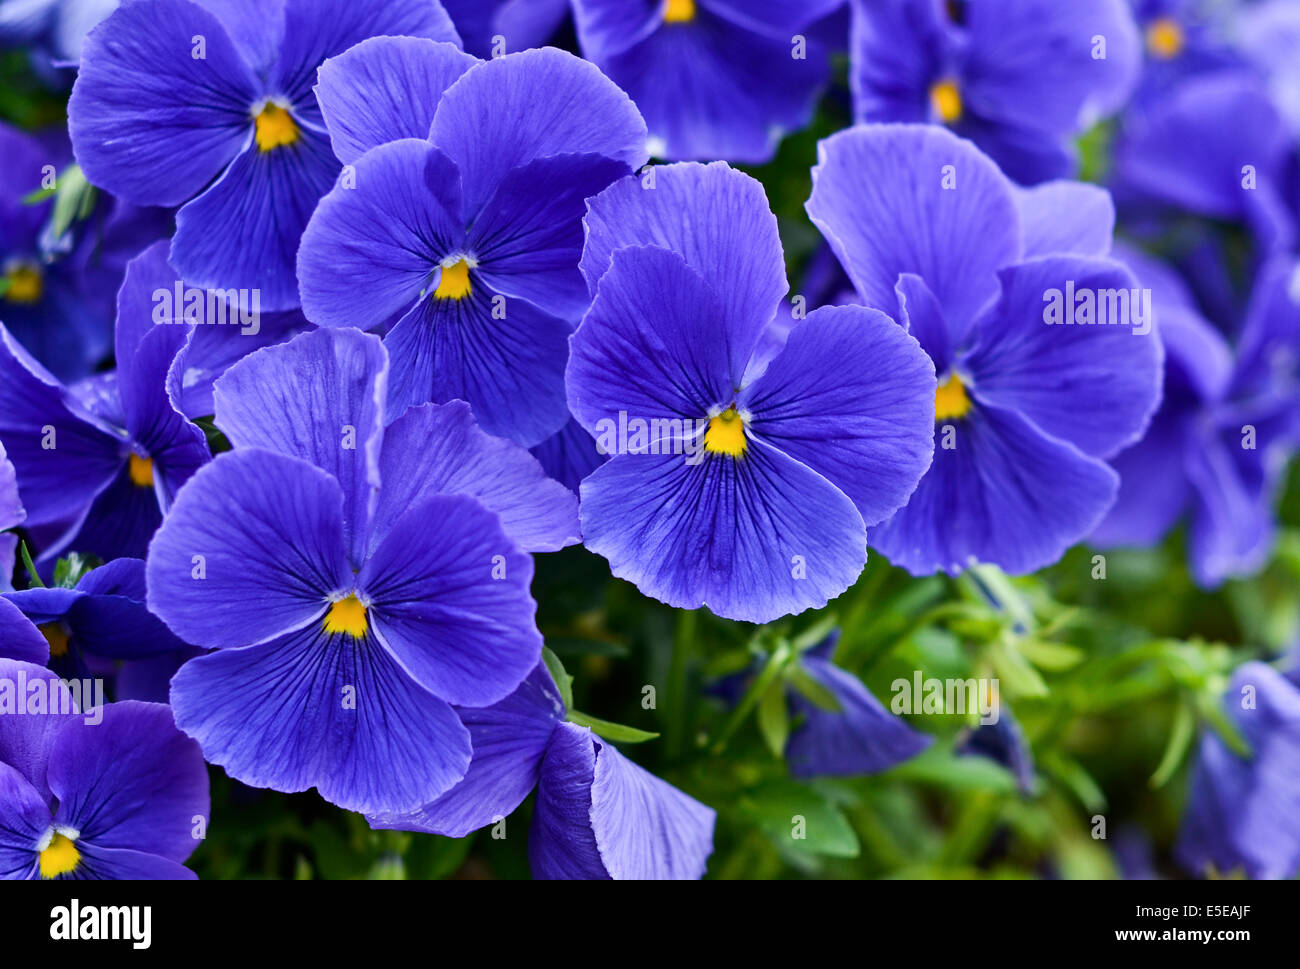 Blue violets Stock Photo - Alamy